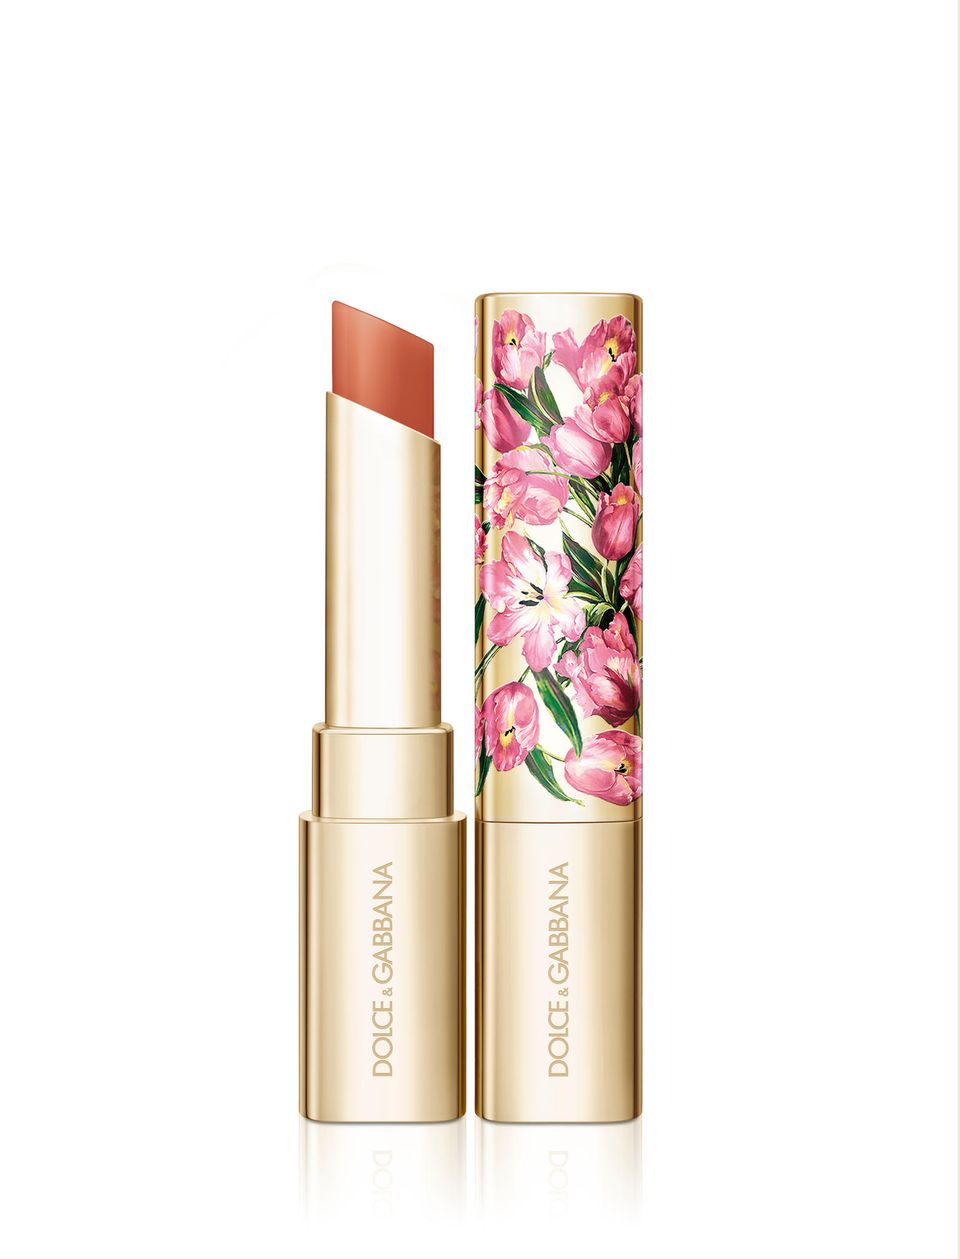 Der "Sheerlips Hydrating Tinted Lip Balm" in der Farbnuance "Lovely Tulip" verleiht den Lippen nicht nur Feuchtigkeit, sondern auch einen Hauch von Farbe. Die perfekte Kombi, von Dolce & Gabbana, c.a. 39 Euro.